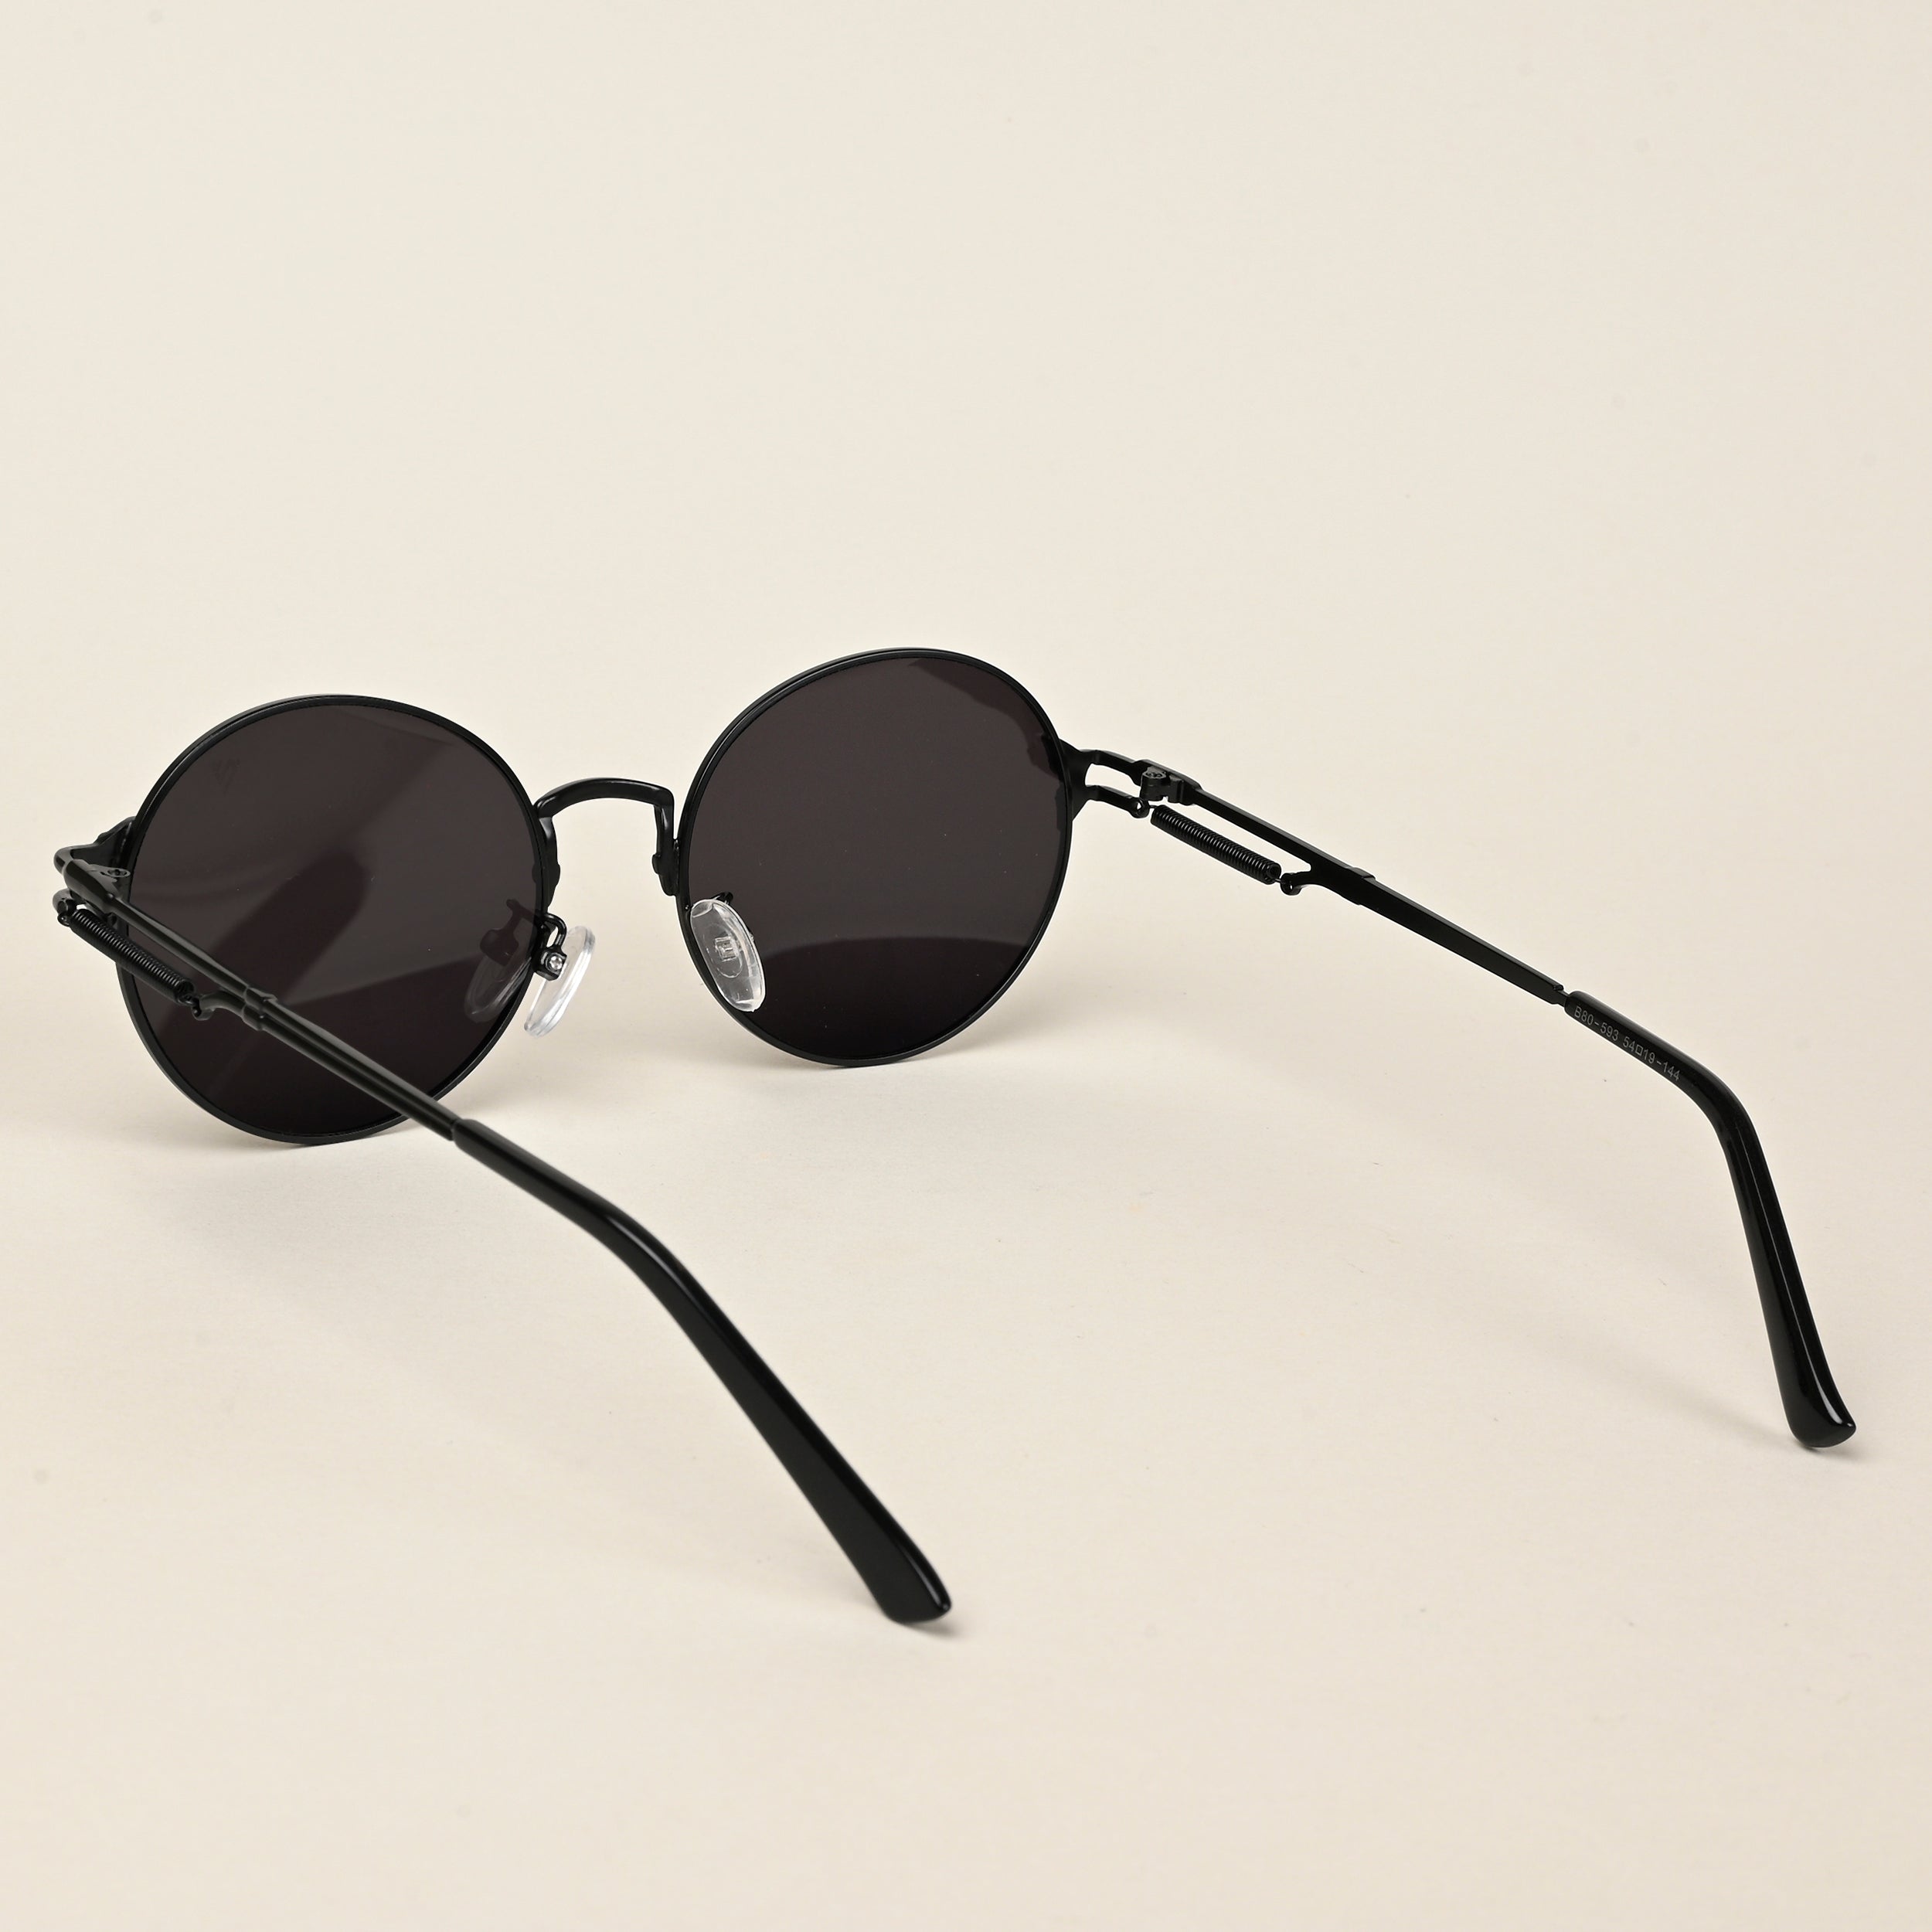 Voyage Round Sunglasses for Men & Women (Black Lens | Black Frame  - MG5187)